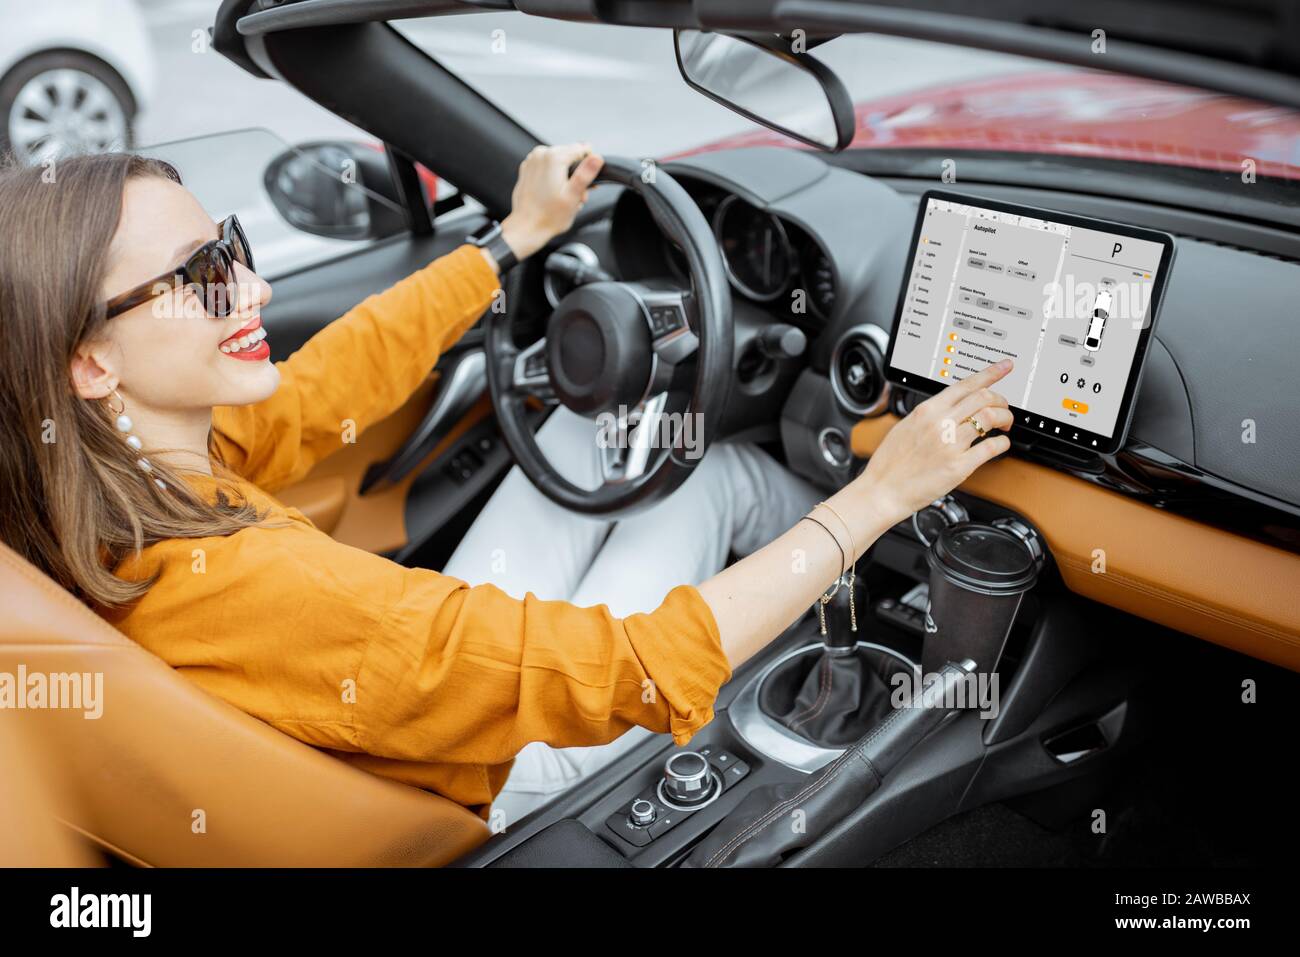 Alegre mujer que controla el coche con un tablero digital, cambiando el modo de piloto automático mientras conduce un cabriolet. Concepto de coche inteligente Foto de stock